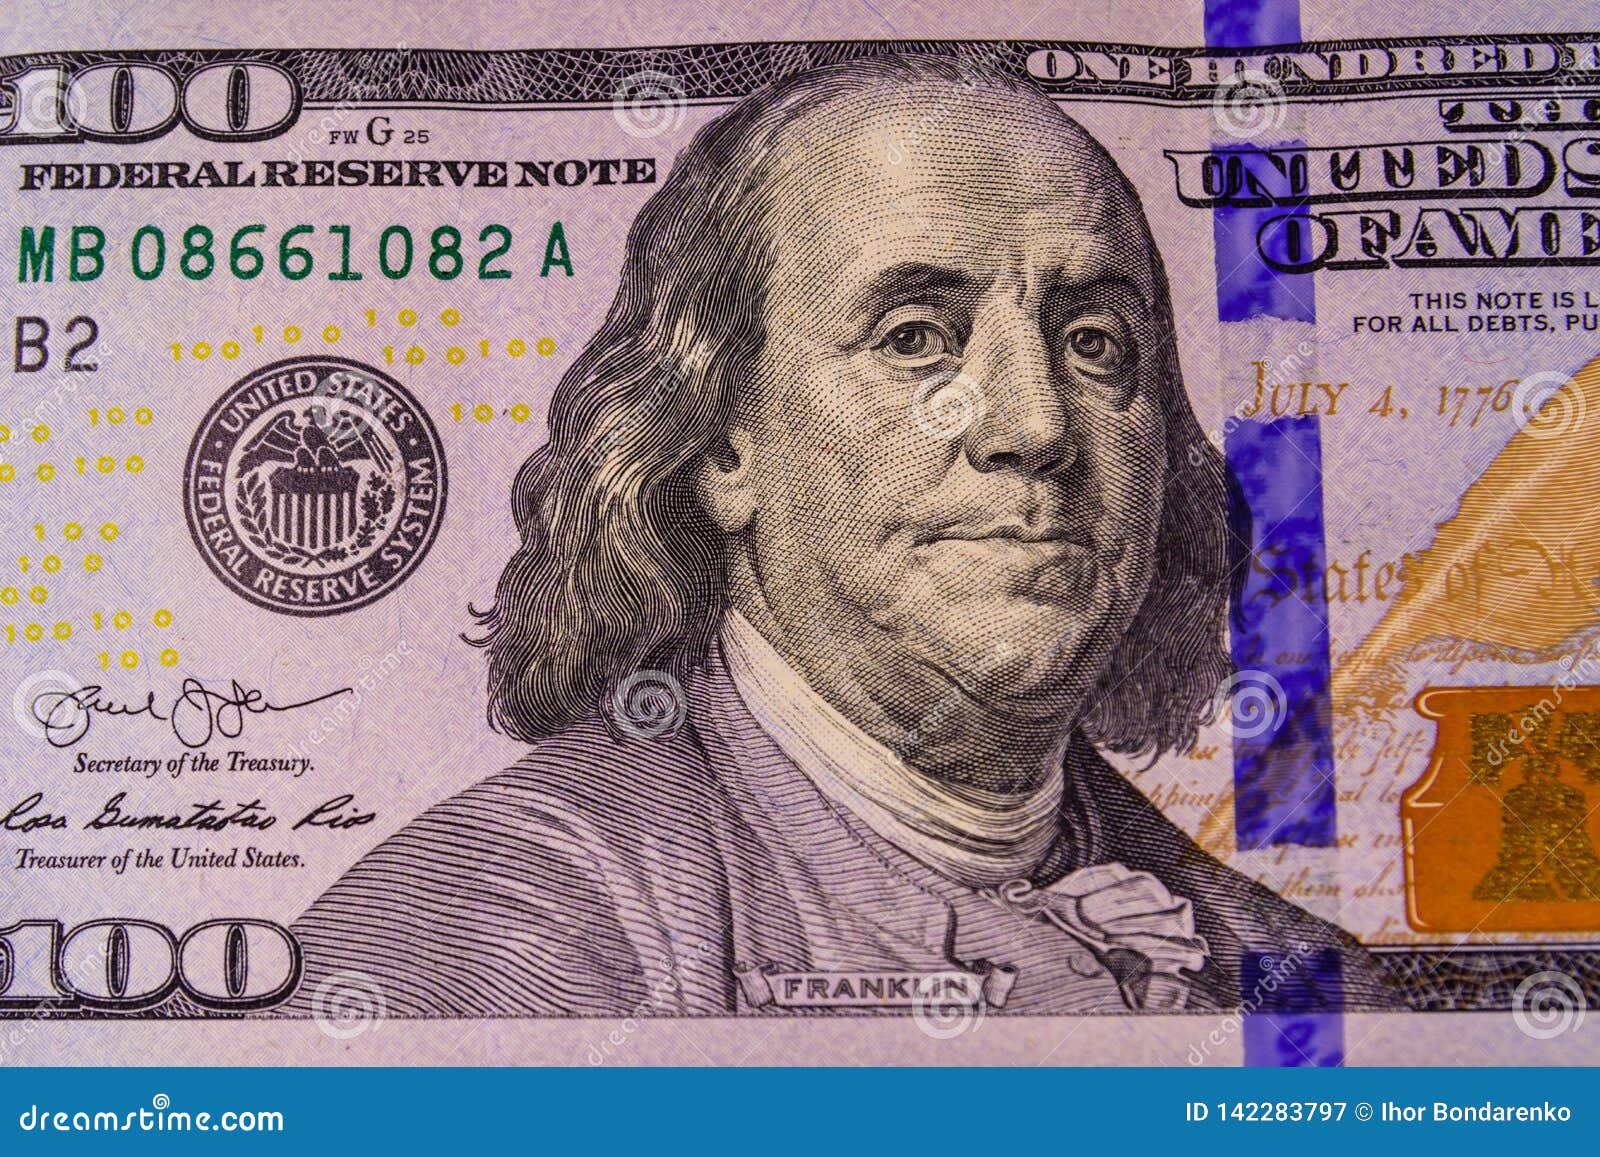 Франклин на какой купюре. Бенджамин Франклин 100$. Франклин 100 долларов. Бенджамин Франклин СТО долларов. Бенджамин Франклин портрет.